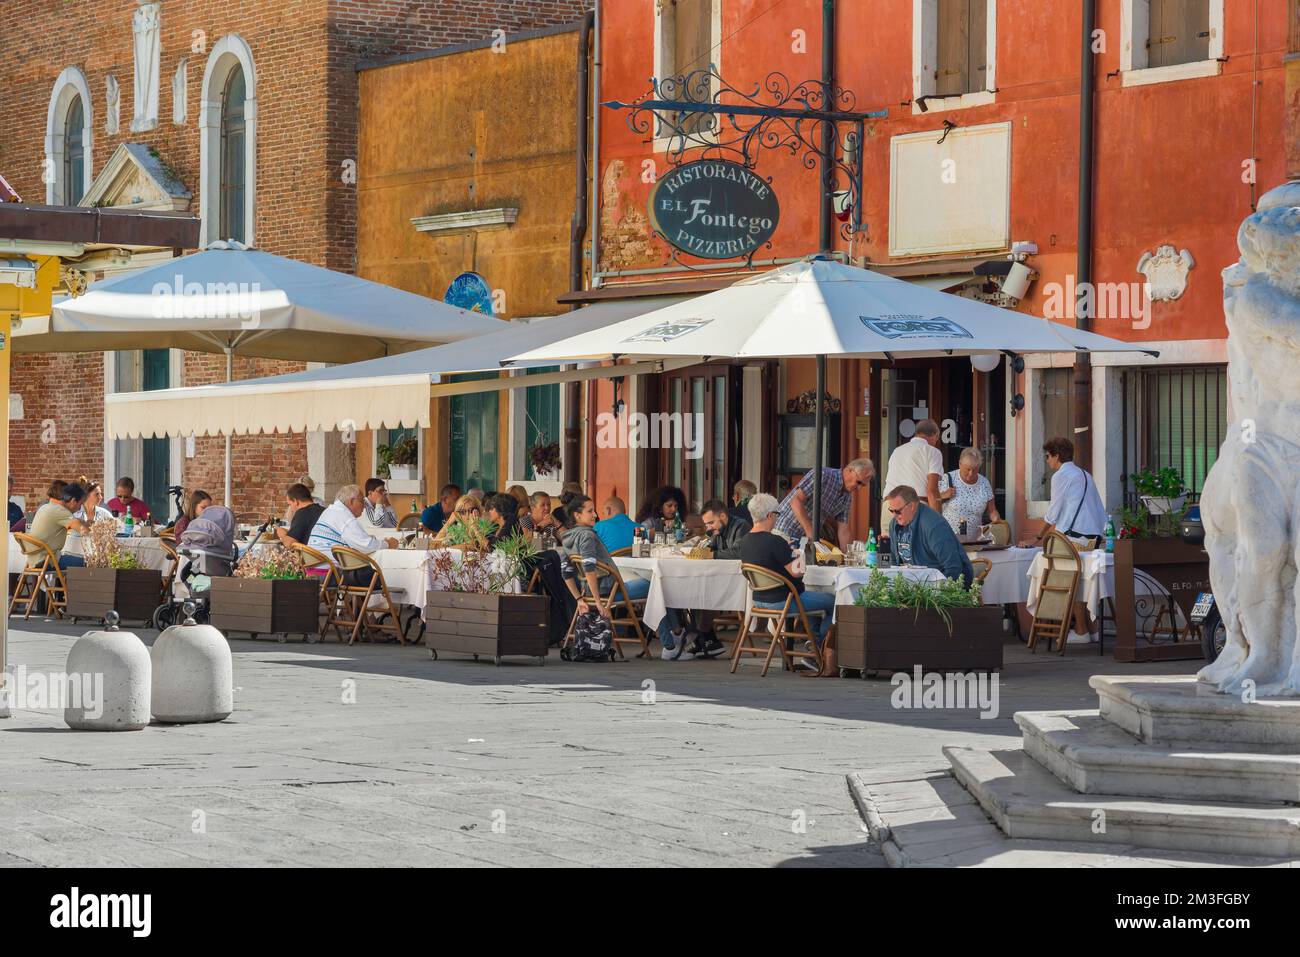 Restaurant piazza Italy, Blick im Sommer auf eine Gruppe von Menschen, die außerhalb einer Pizzeria im malerischen Hafen von Chioggia, Comune of Venice, Italien, essen Stockfoto